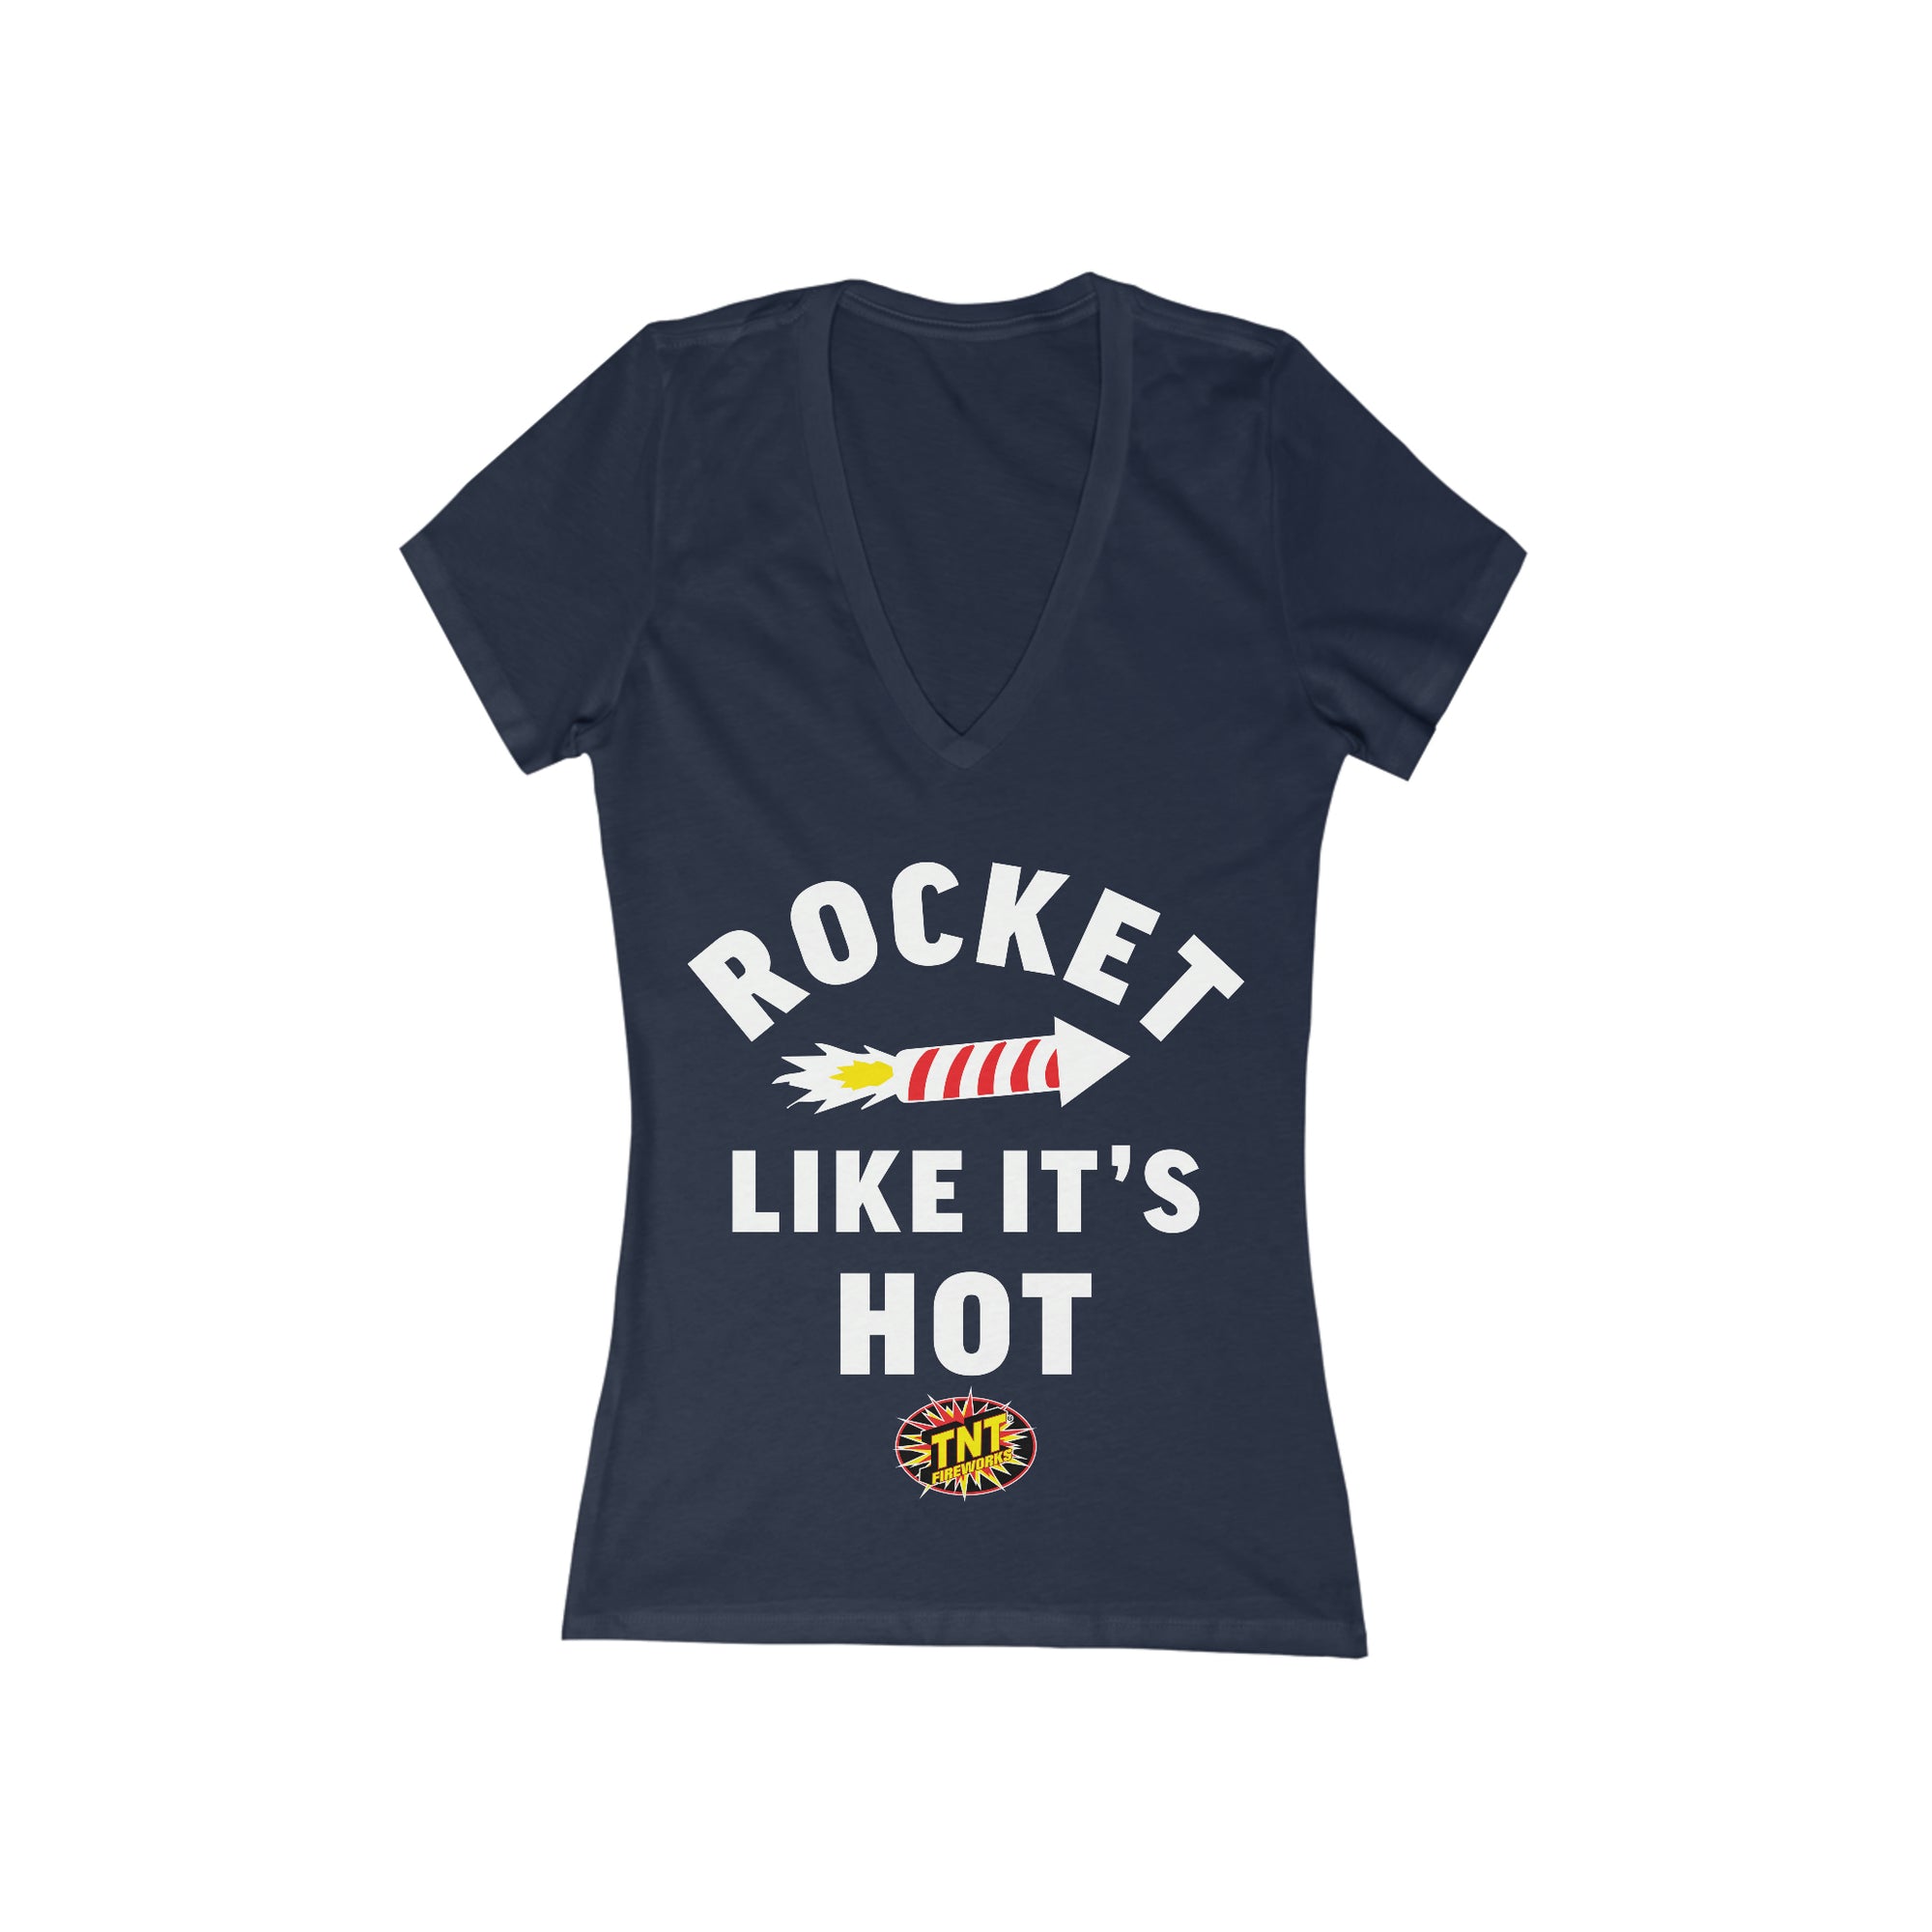 Women's Rocket Like It's Hot V-Neck - Celebrate Everyday